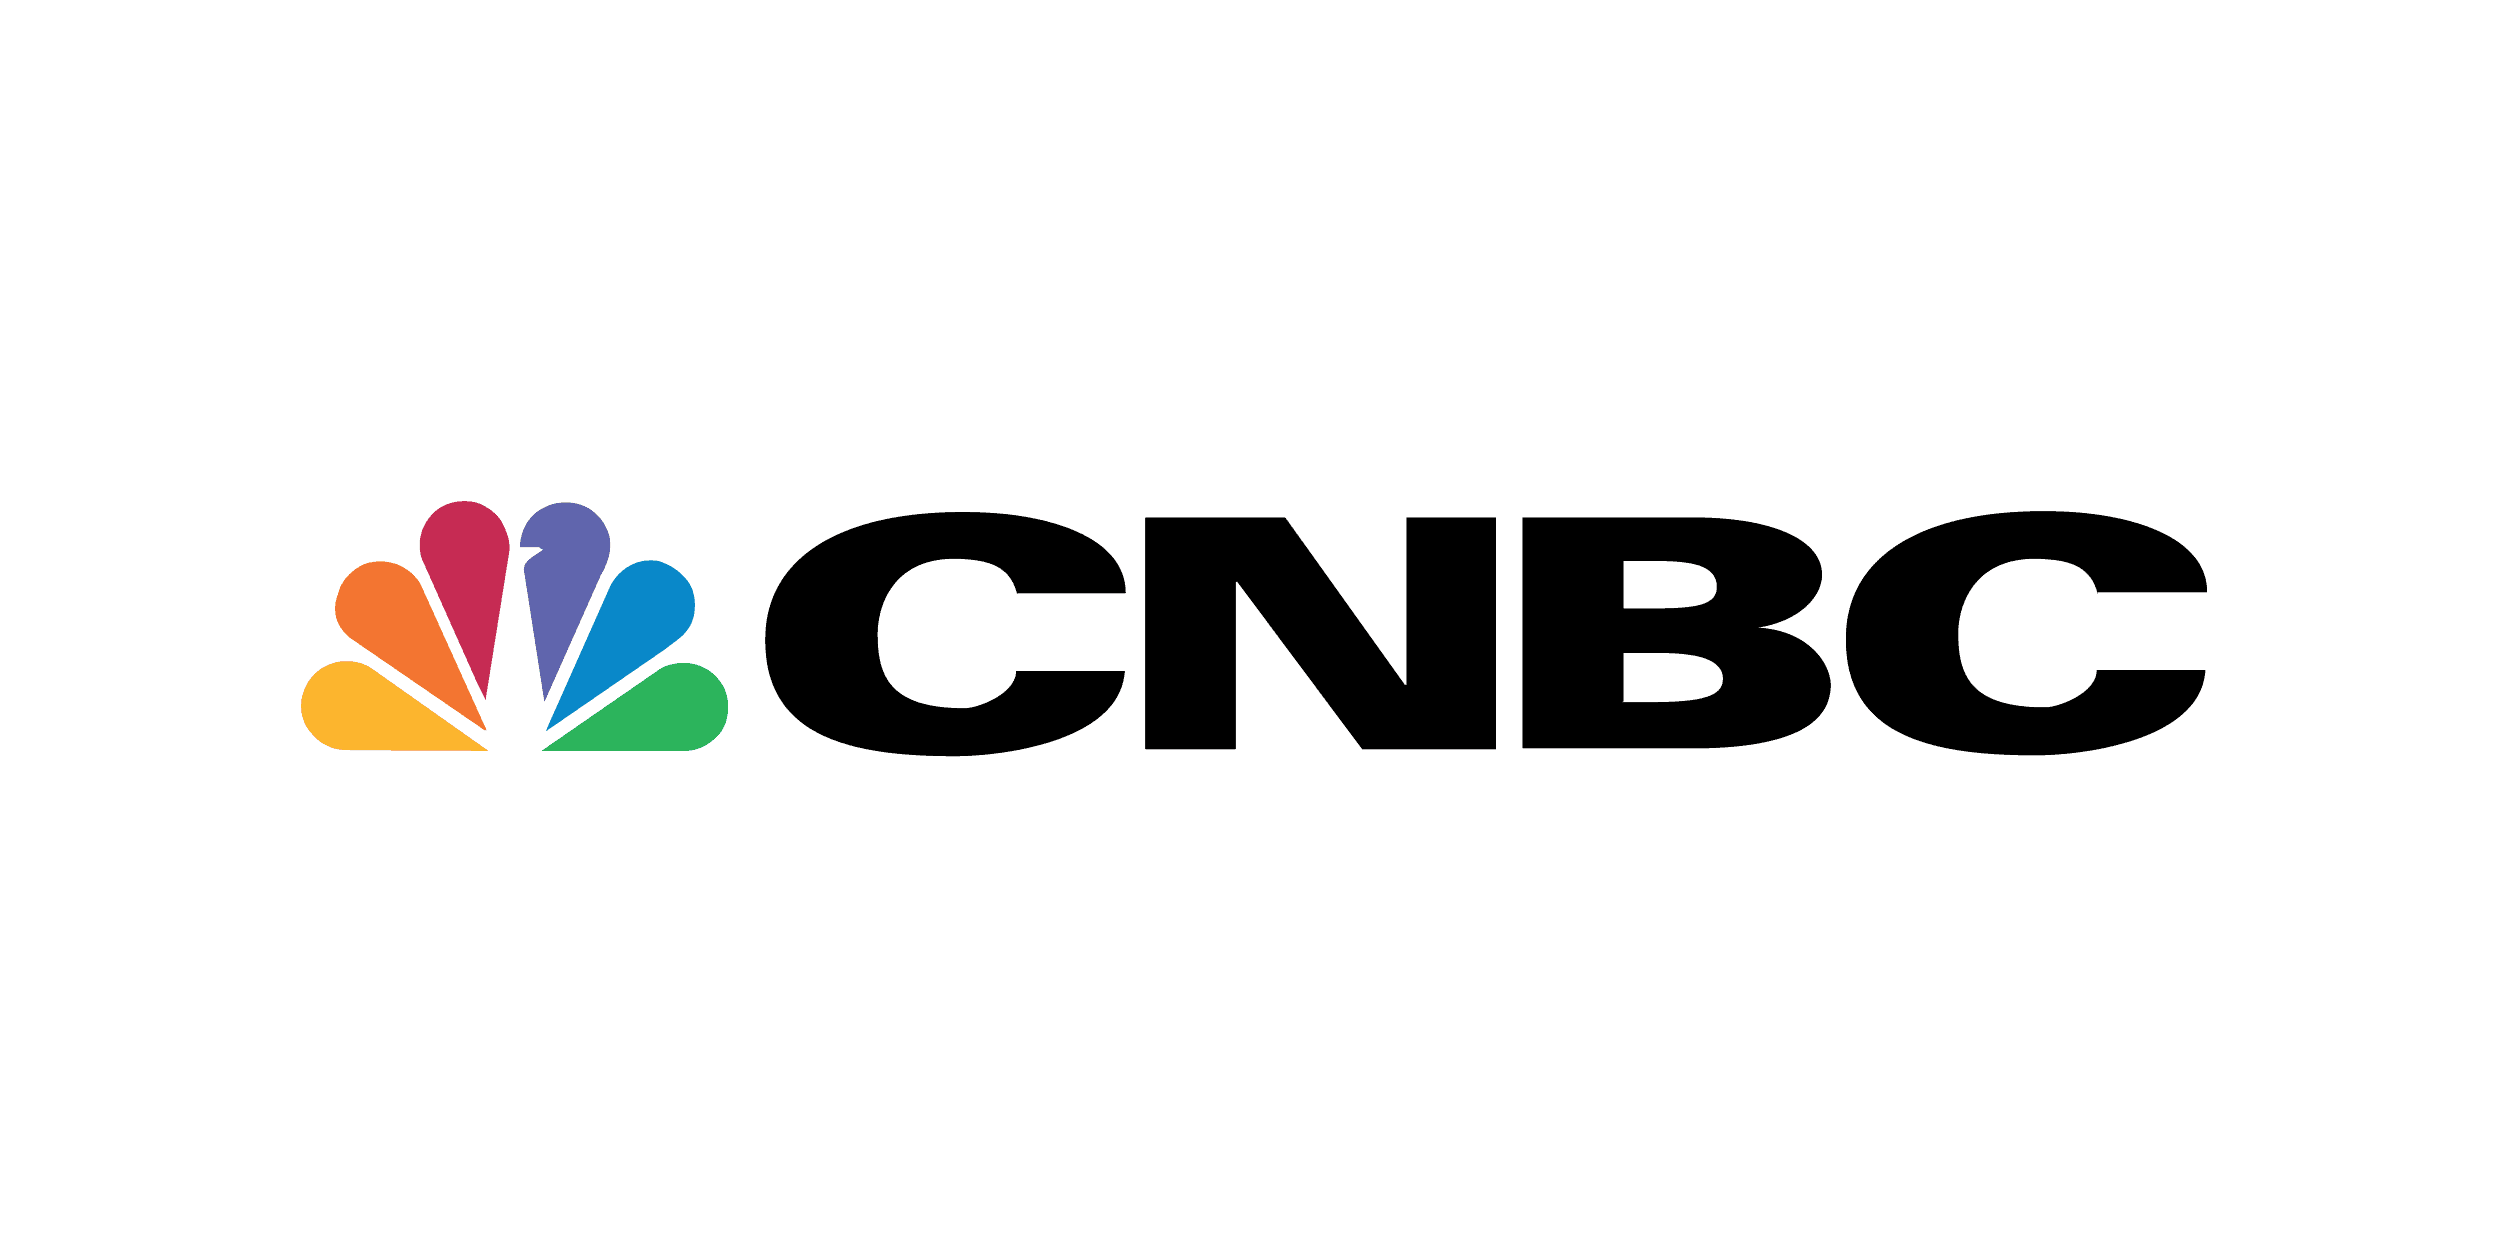 CNBC